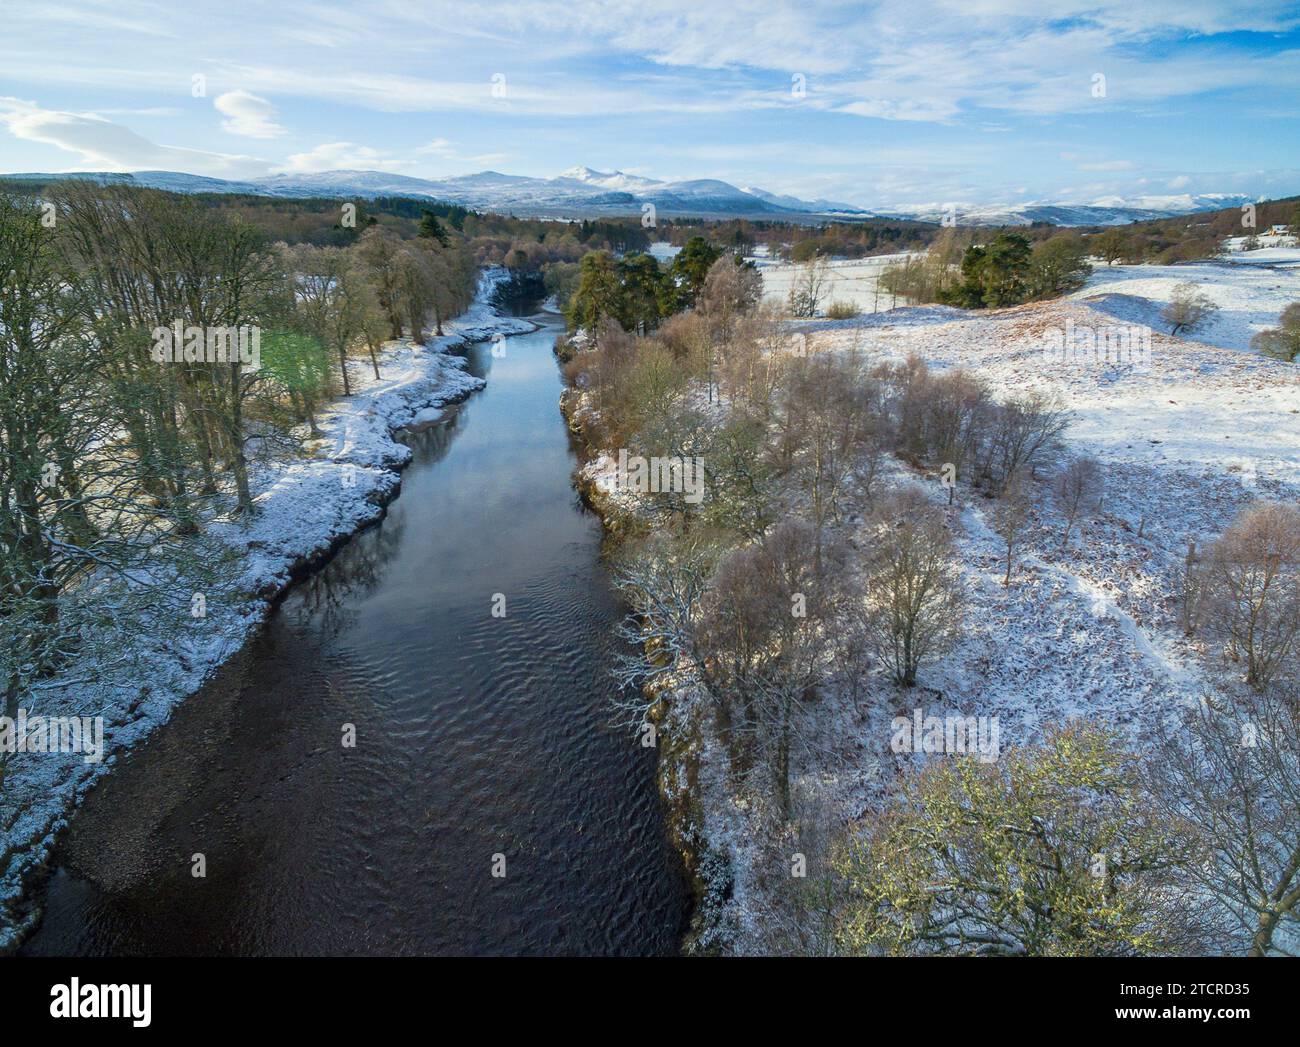 Vue aérienne hivernale de la rivière Carron près d'Ardgay dans les Highlands écossais de Sutherland, Écosse, Royaume-Uni Banque D'Images